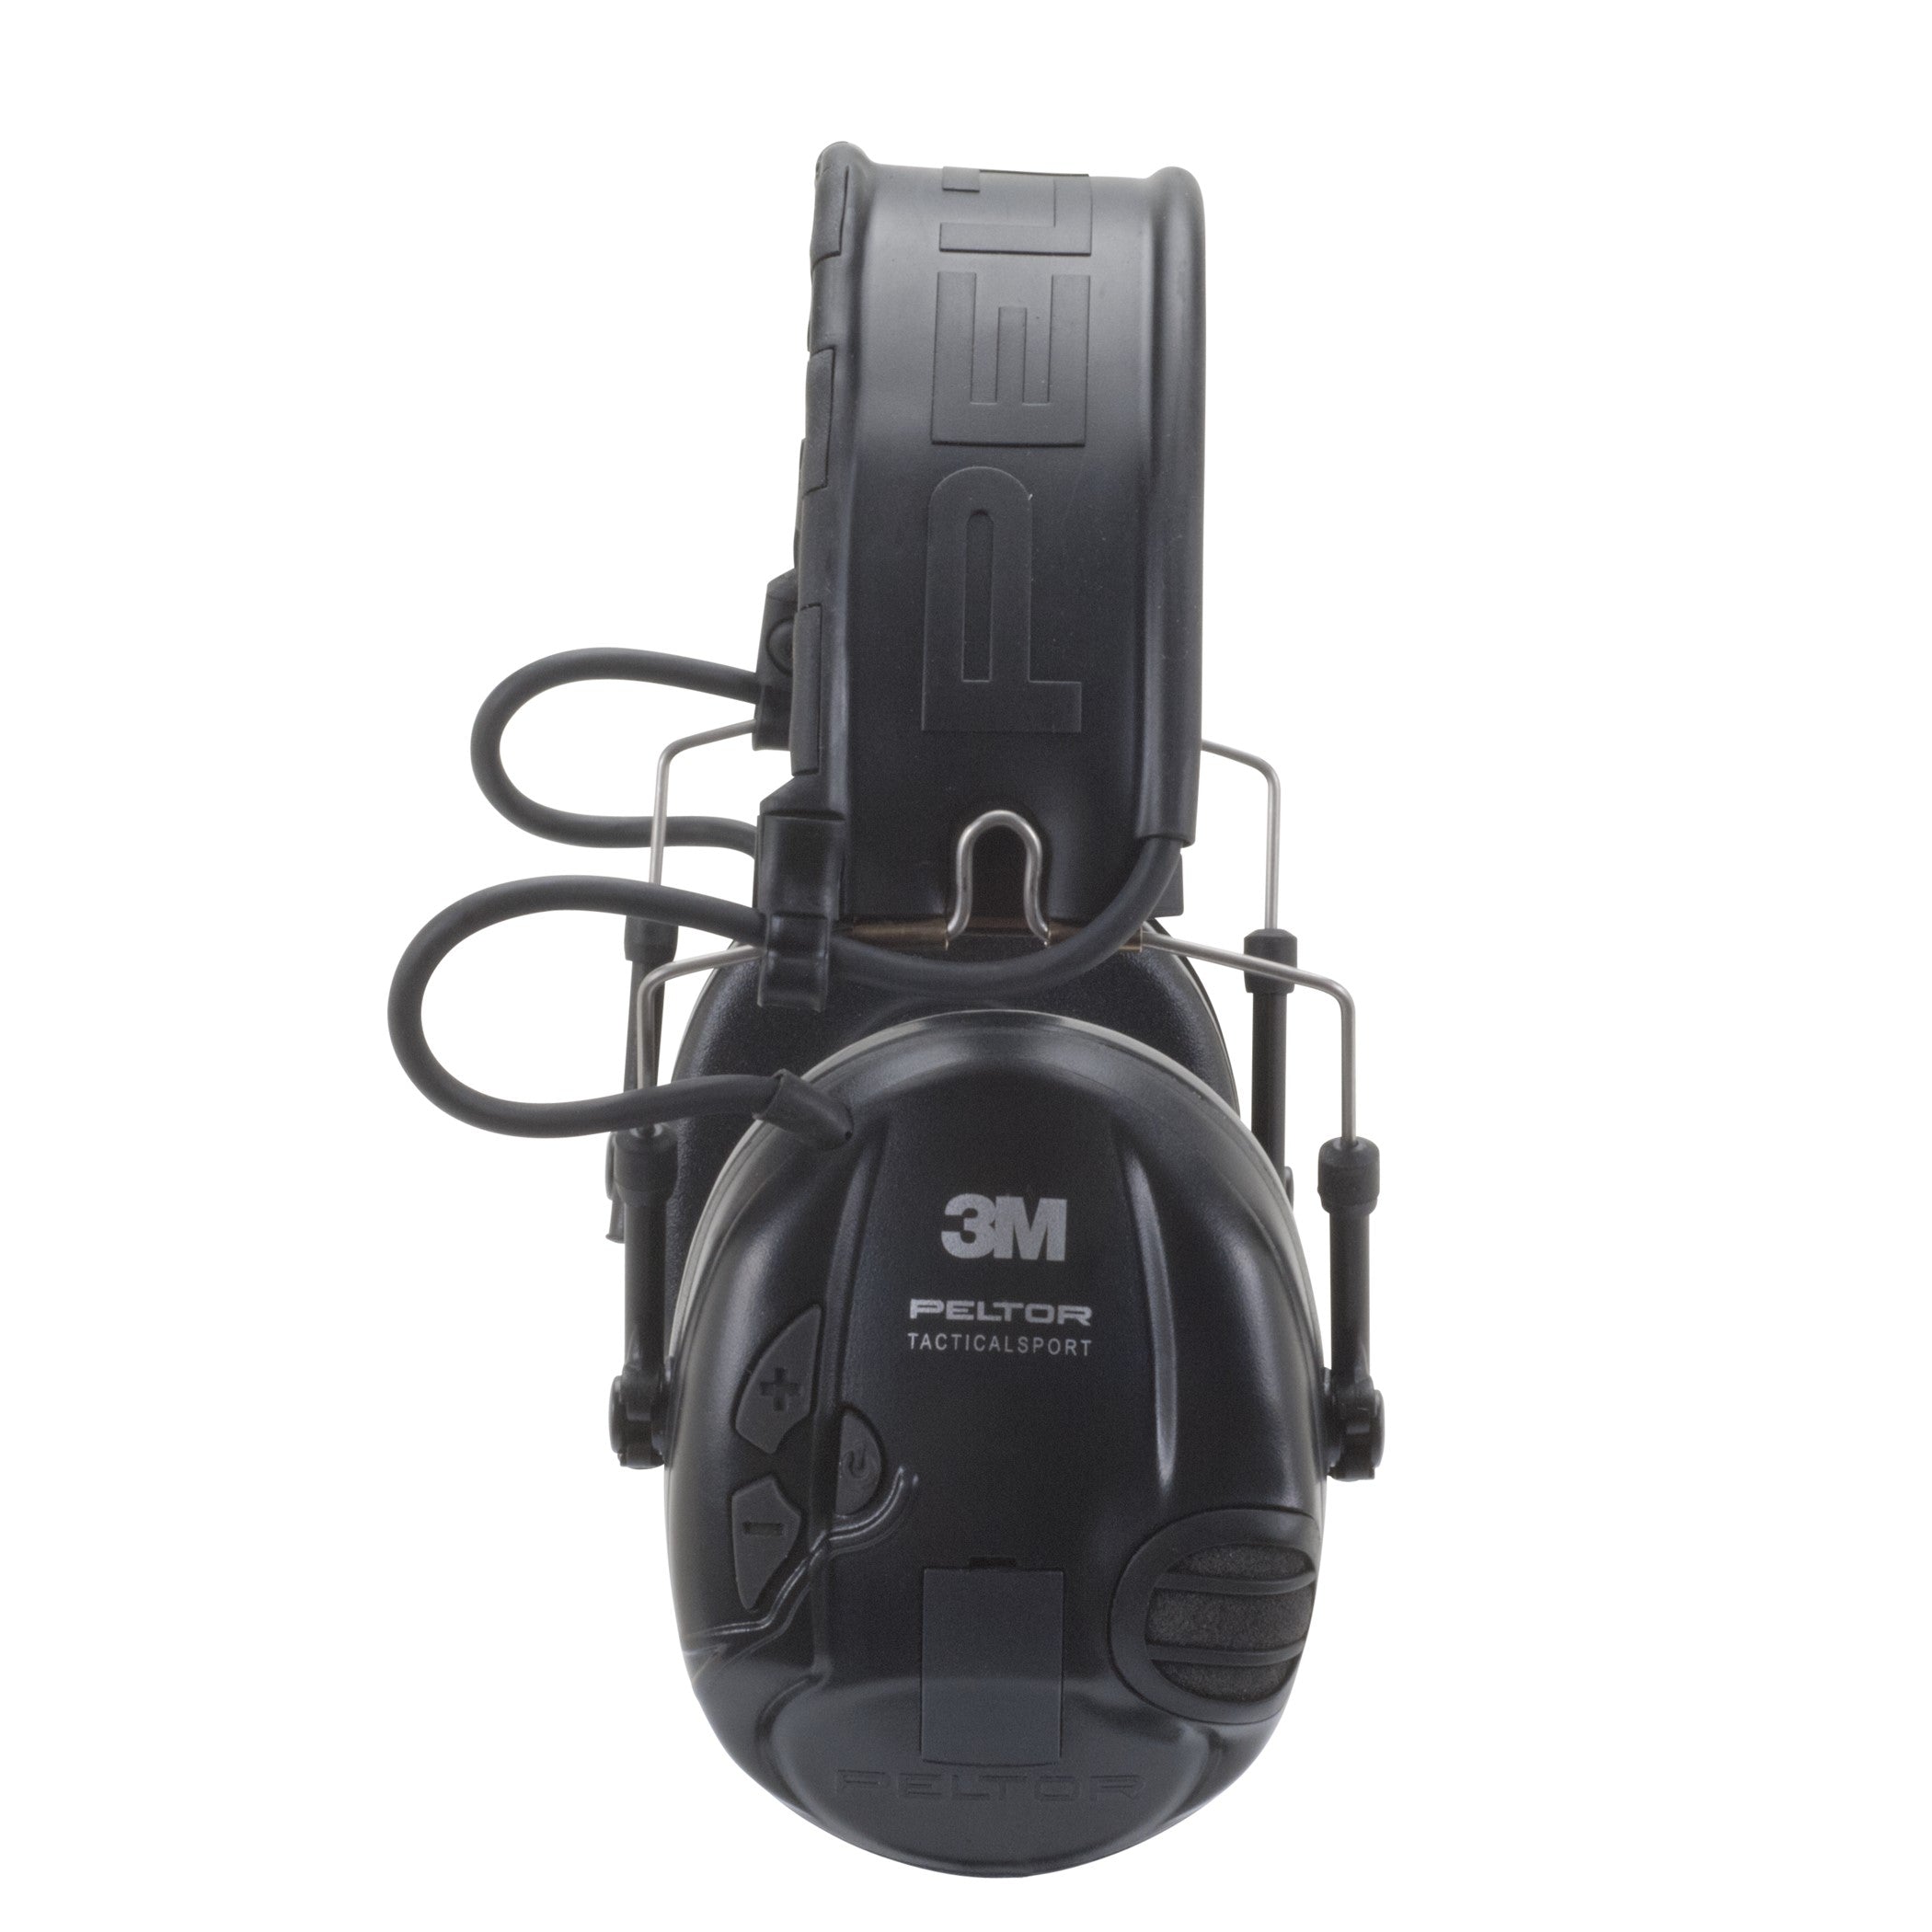 Fone de ouvido tático para comunicações esportivas 3M PELTOR, fita para a cabeça MT16H210F-SV 1 EA / estojo